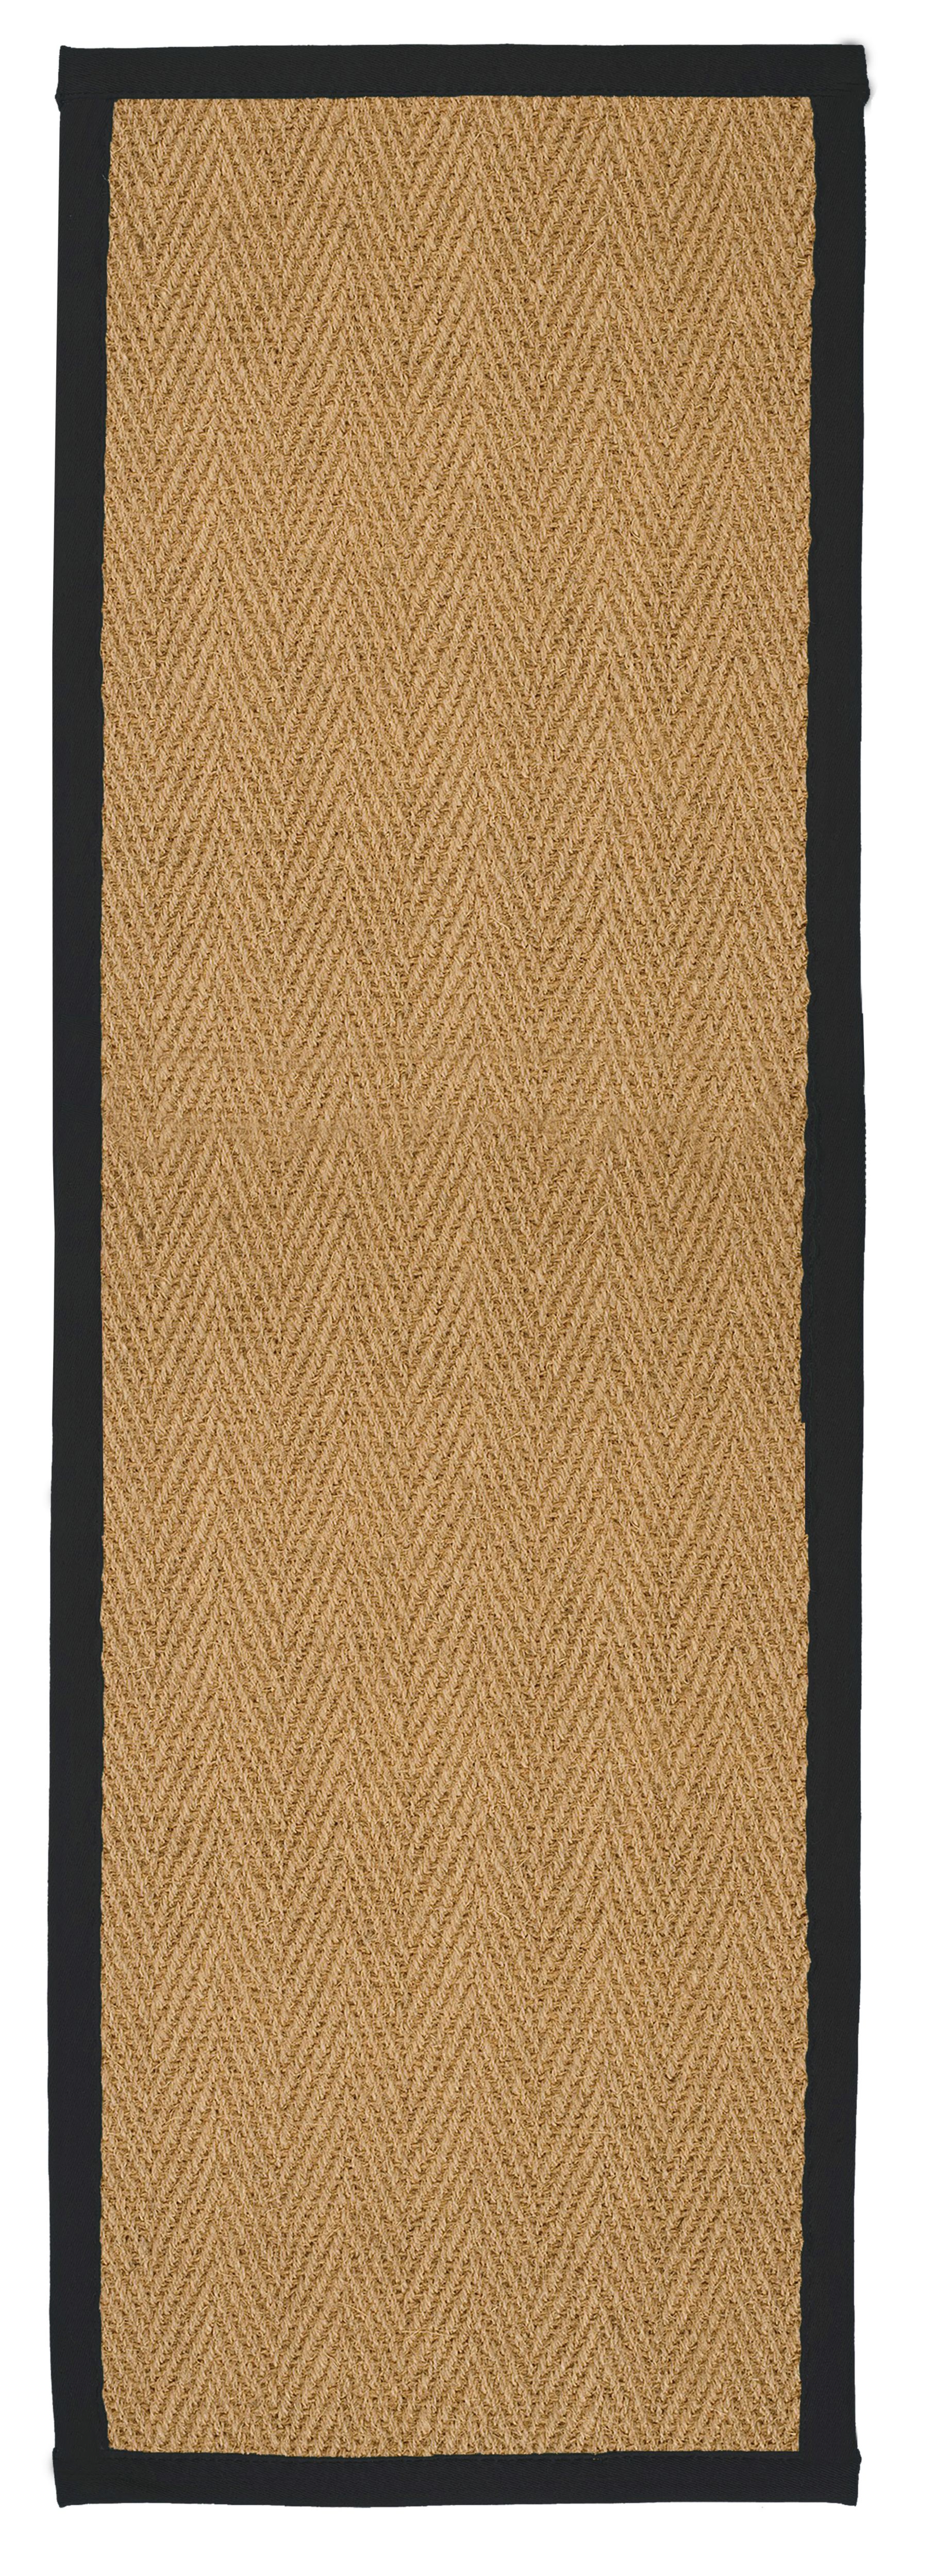 Herringbone weave Brown, black Rug 180cmx60cm